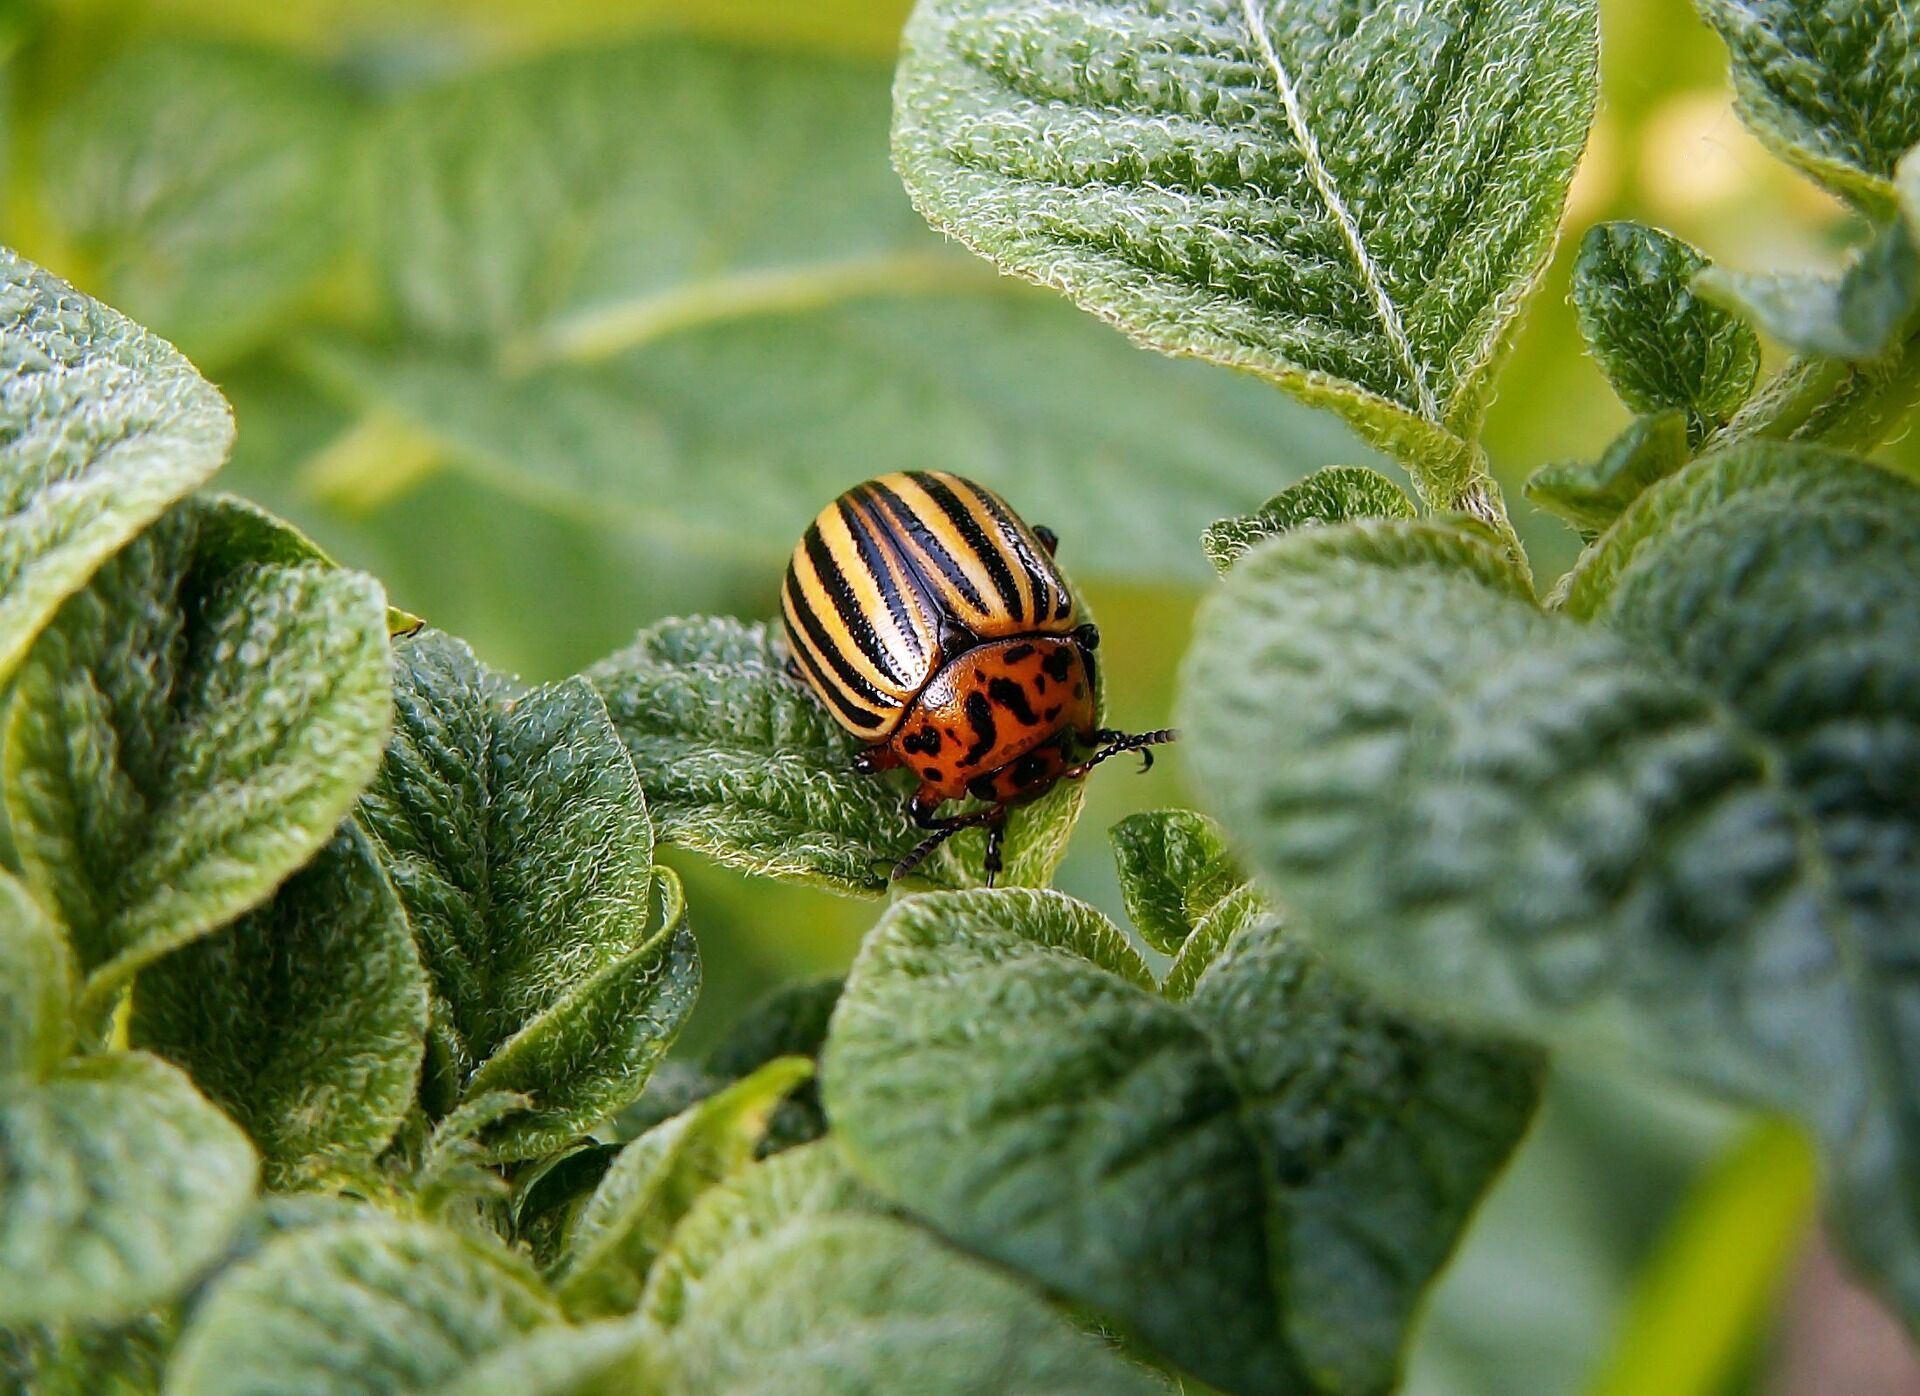 5 способів приготувати інсектицид у домашніх умовах, щоб захистити рослини від шкідників